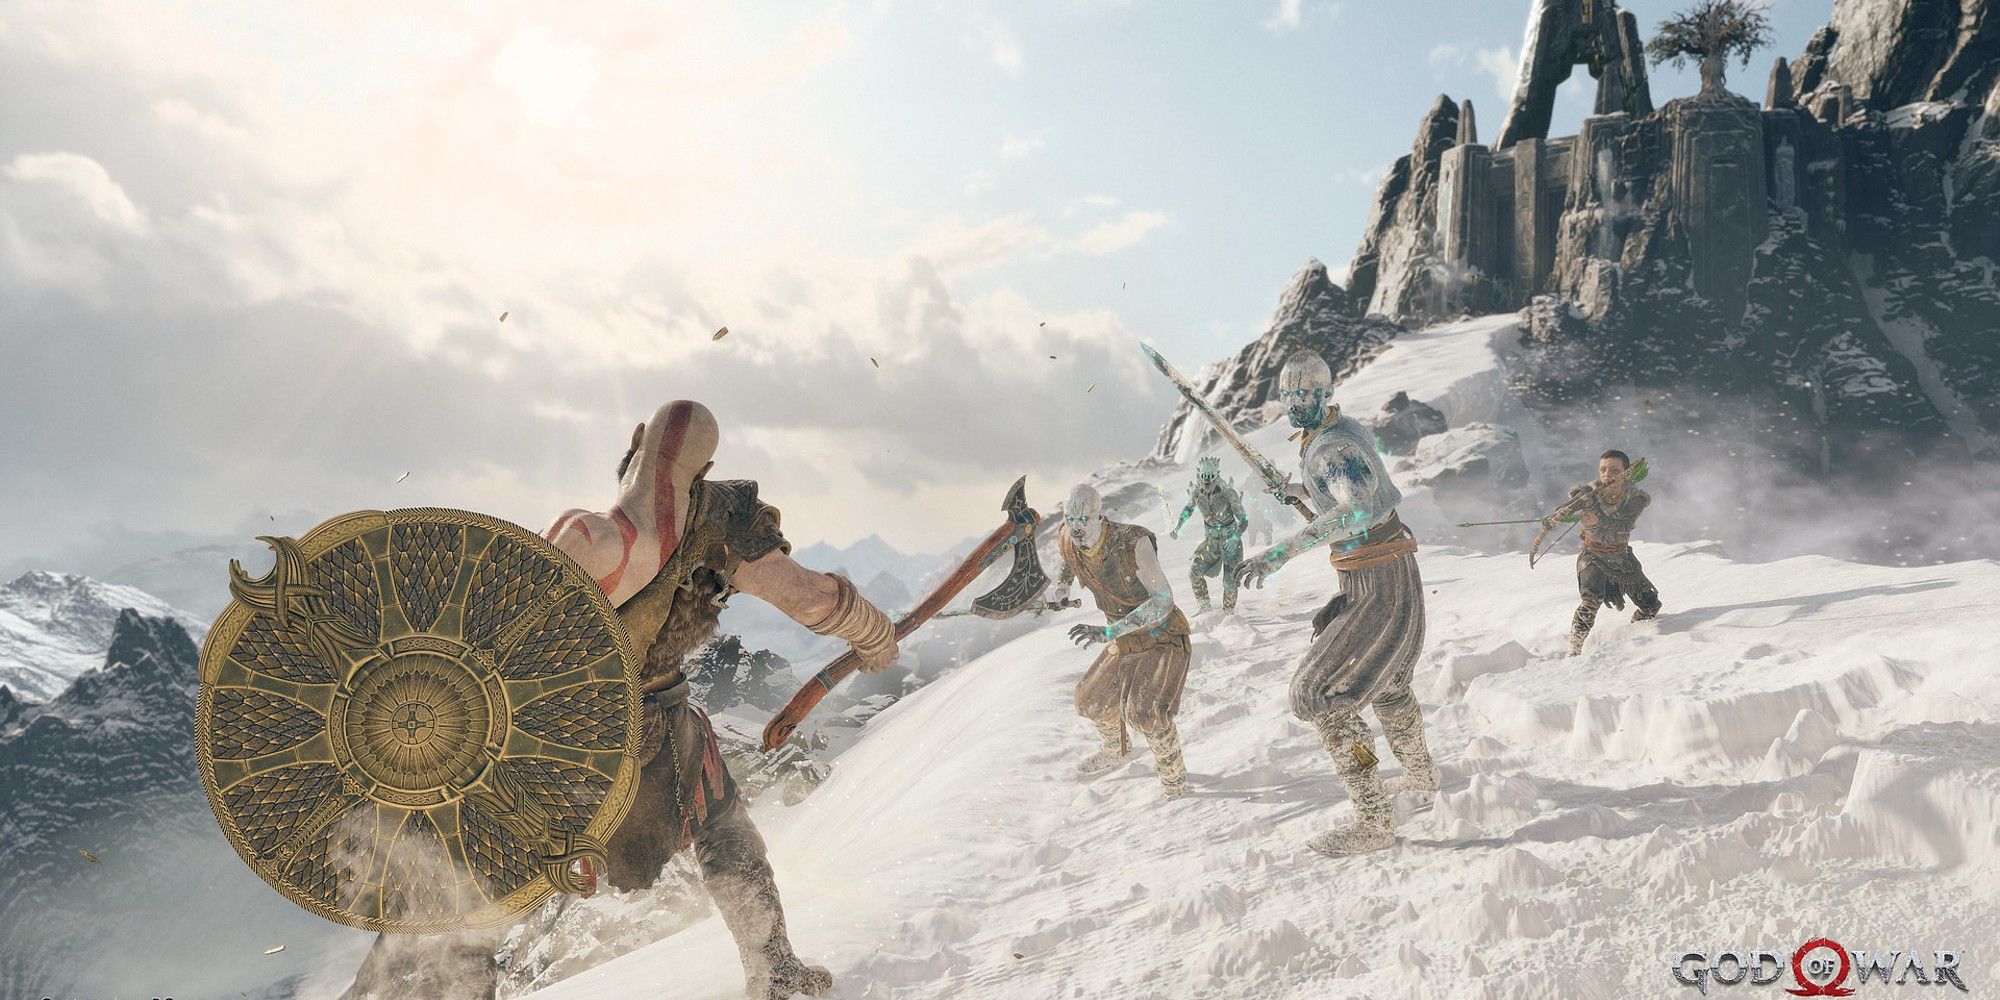 God Of War Kratos fighting draugr on mountain 